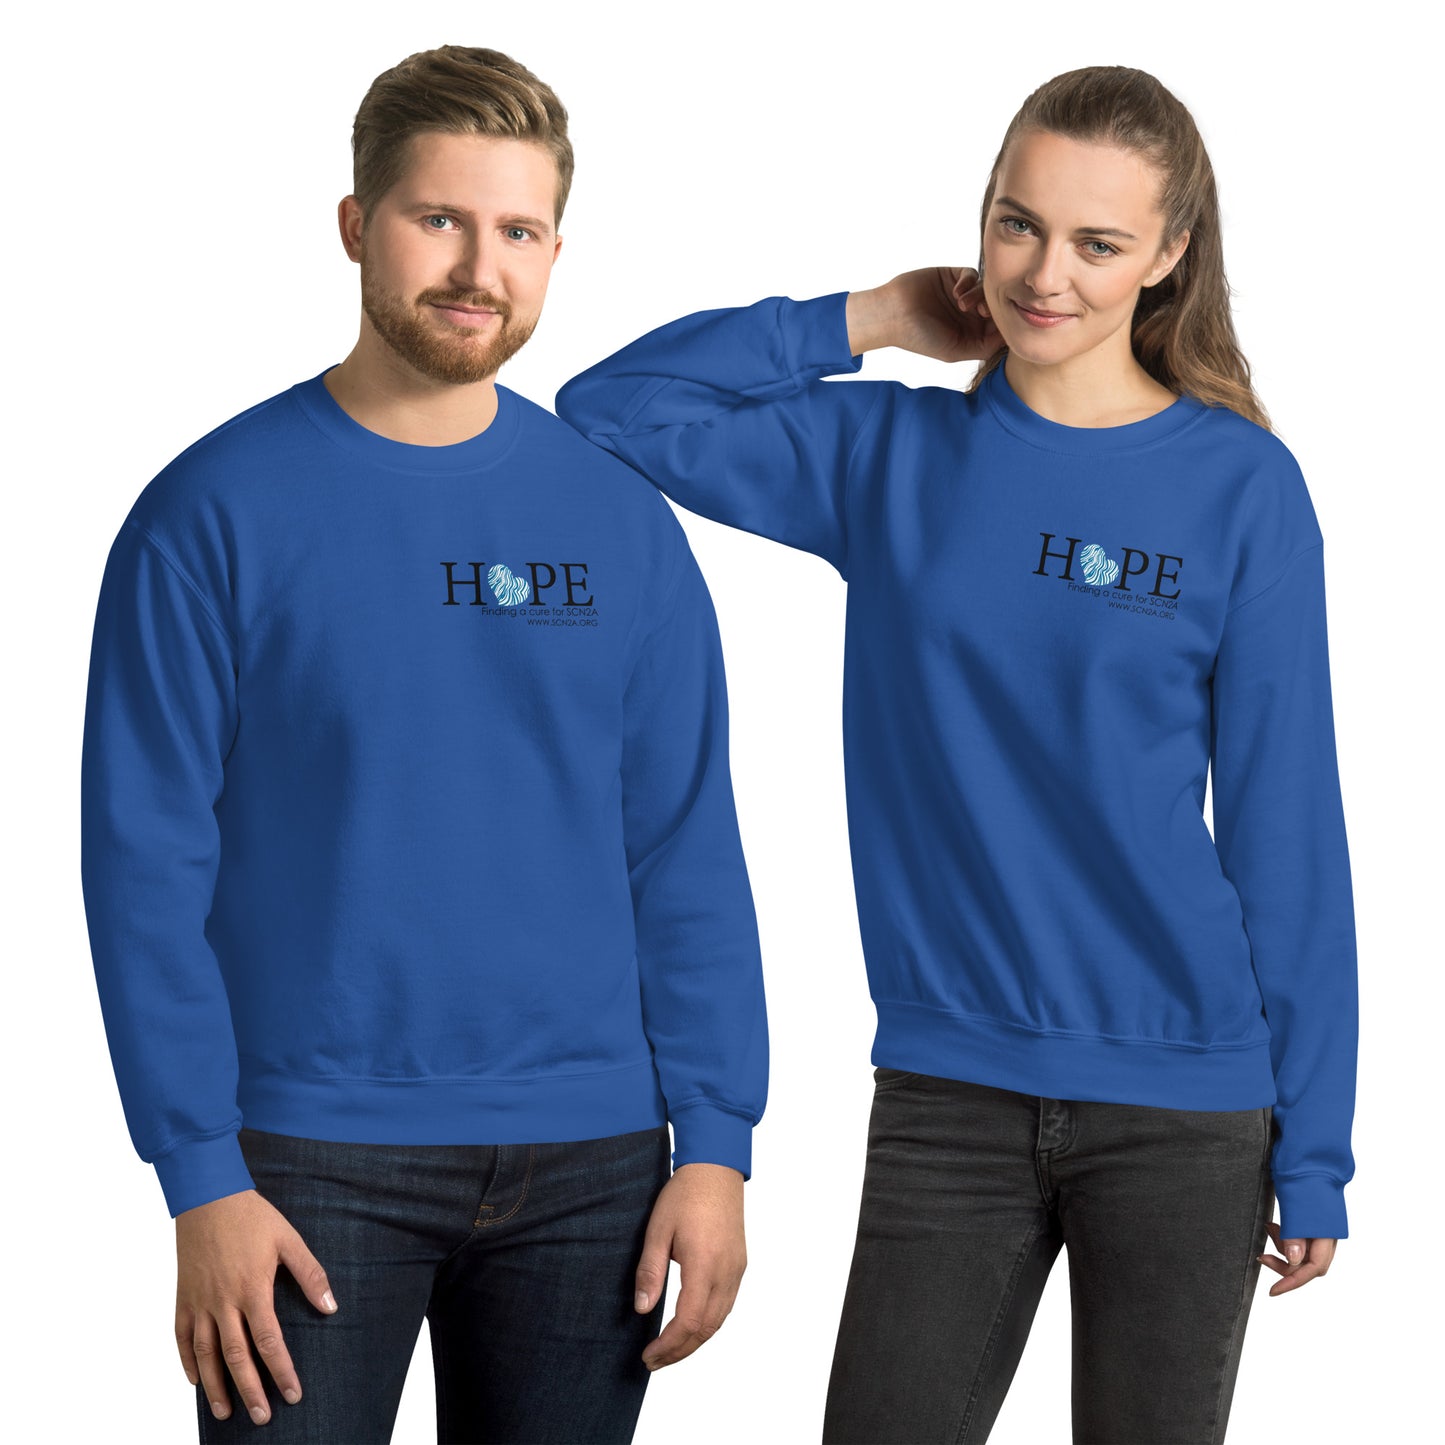 HOPE w/blue heart Unisex Sweatshirt